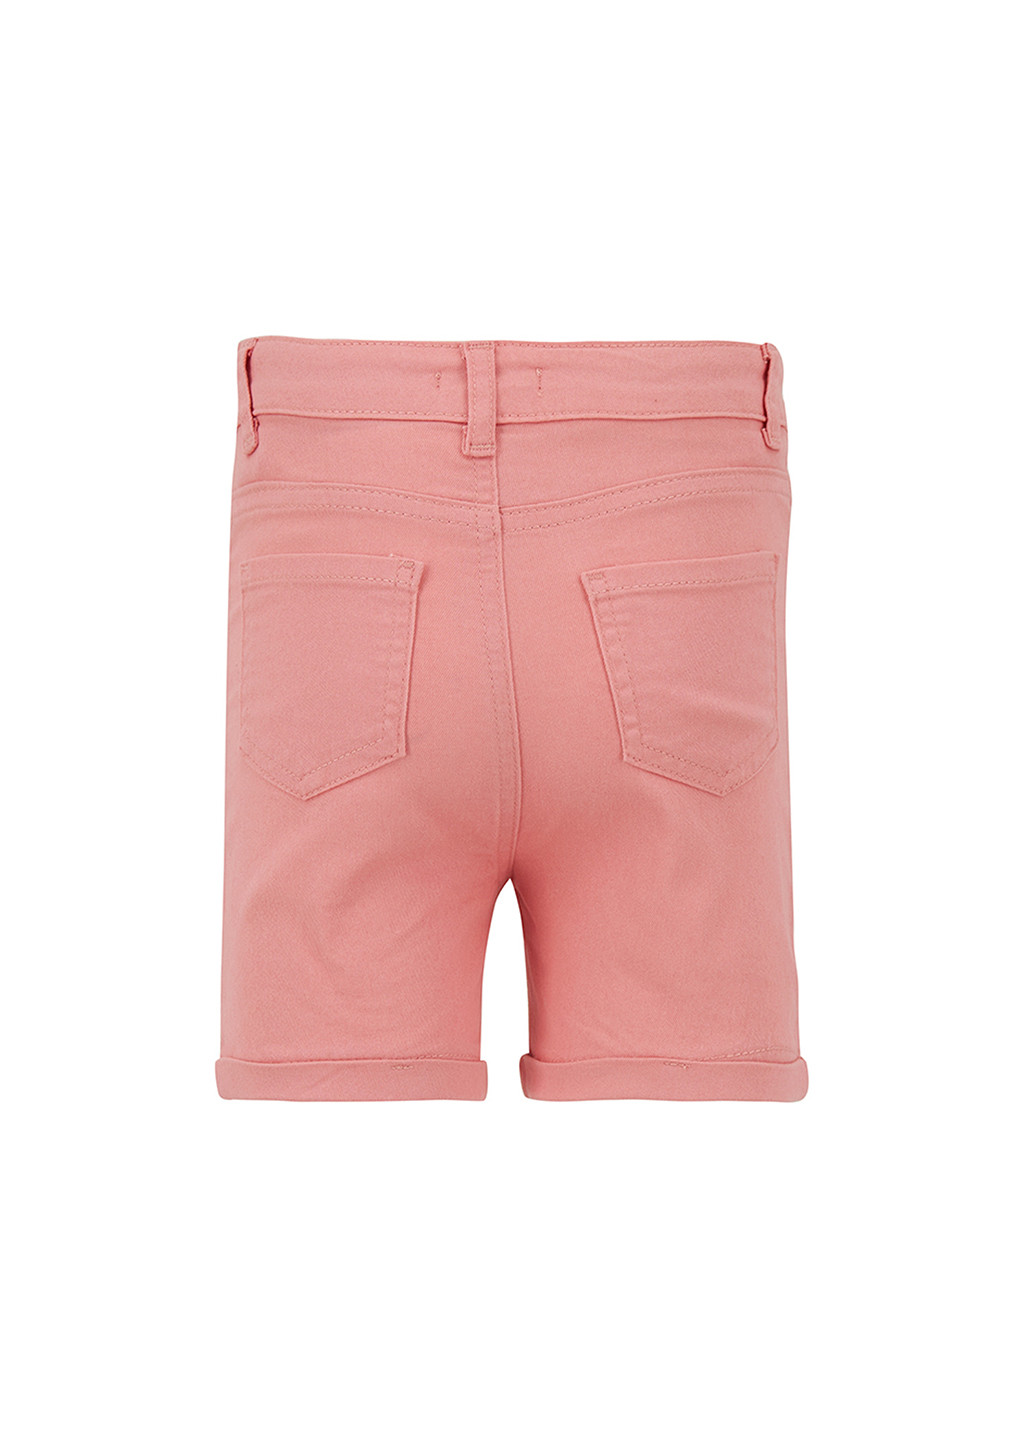 Шорты DeFacto светло-розовые джинсовые хлопок